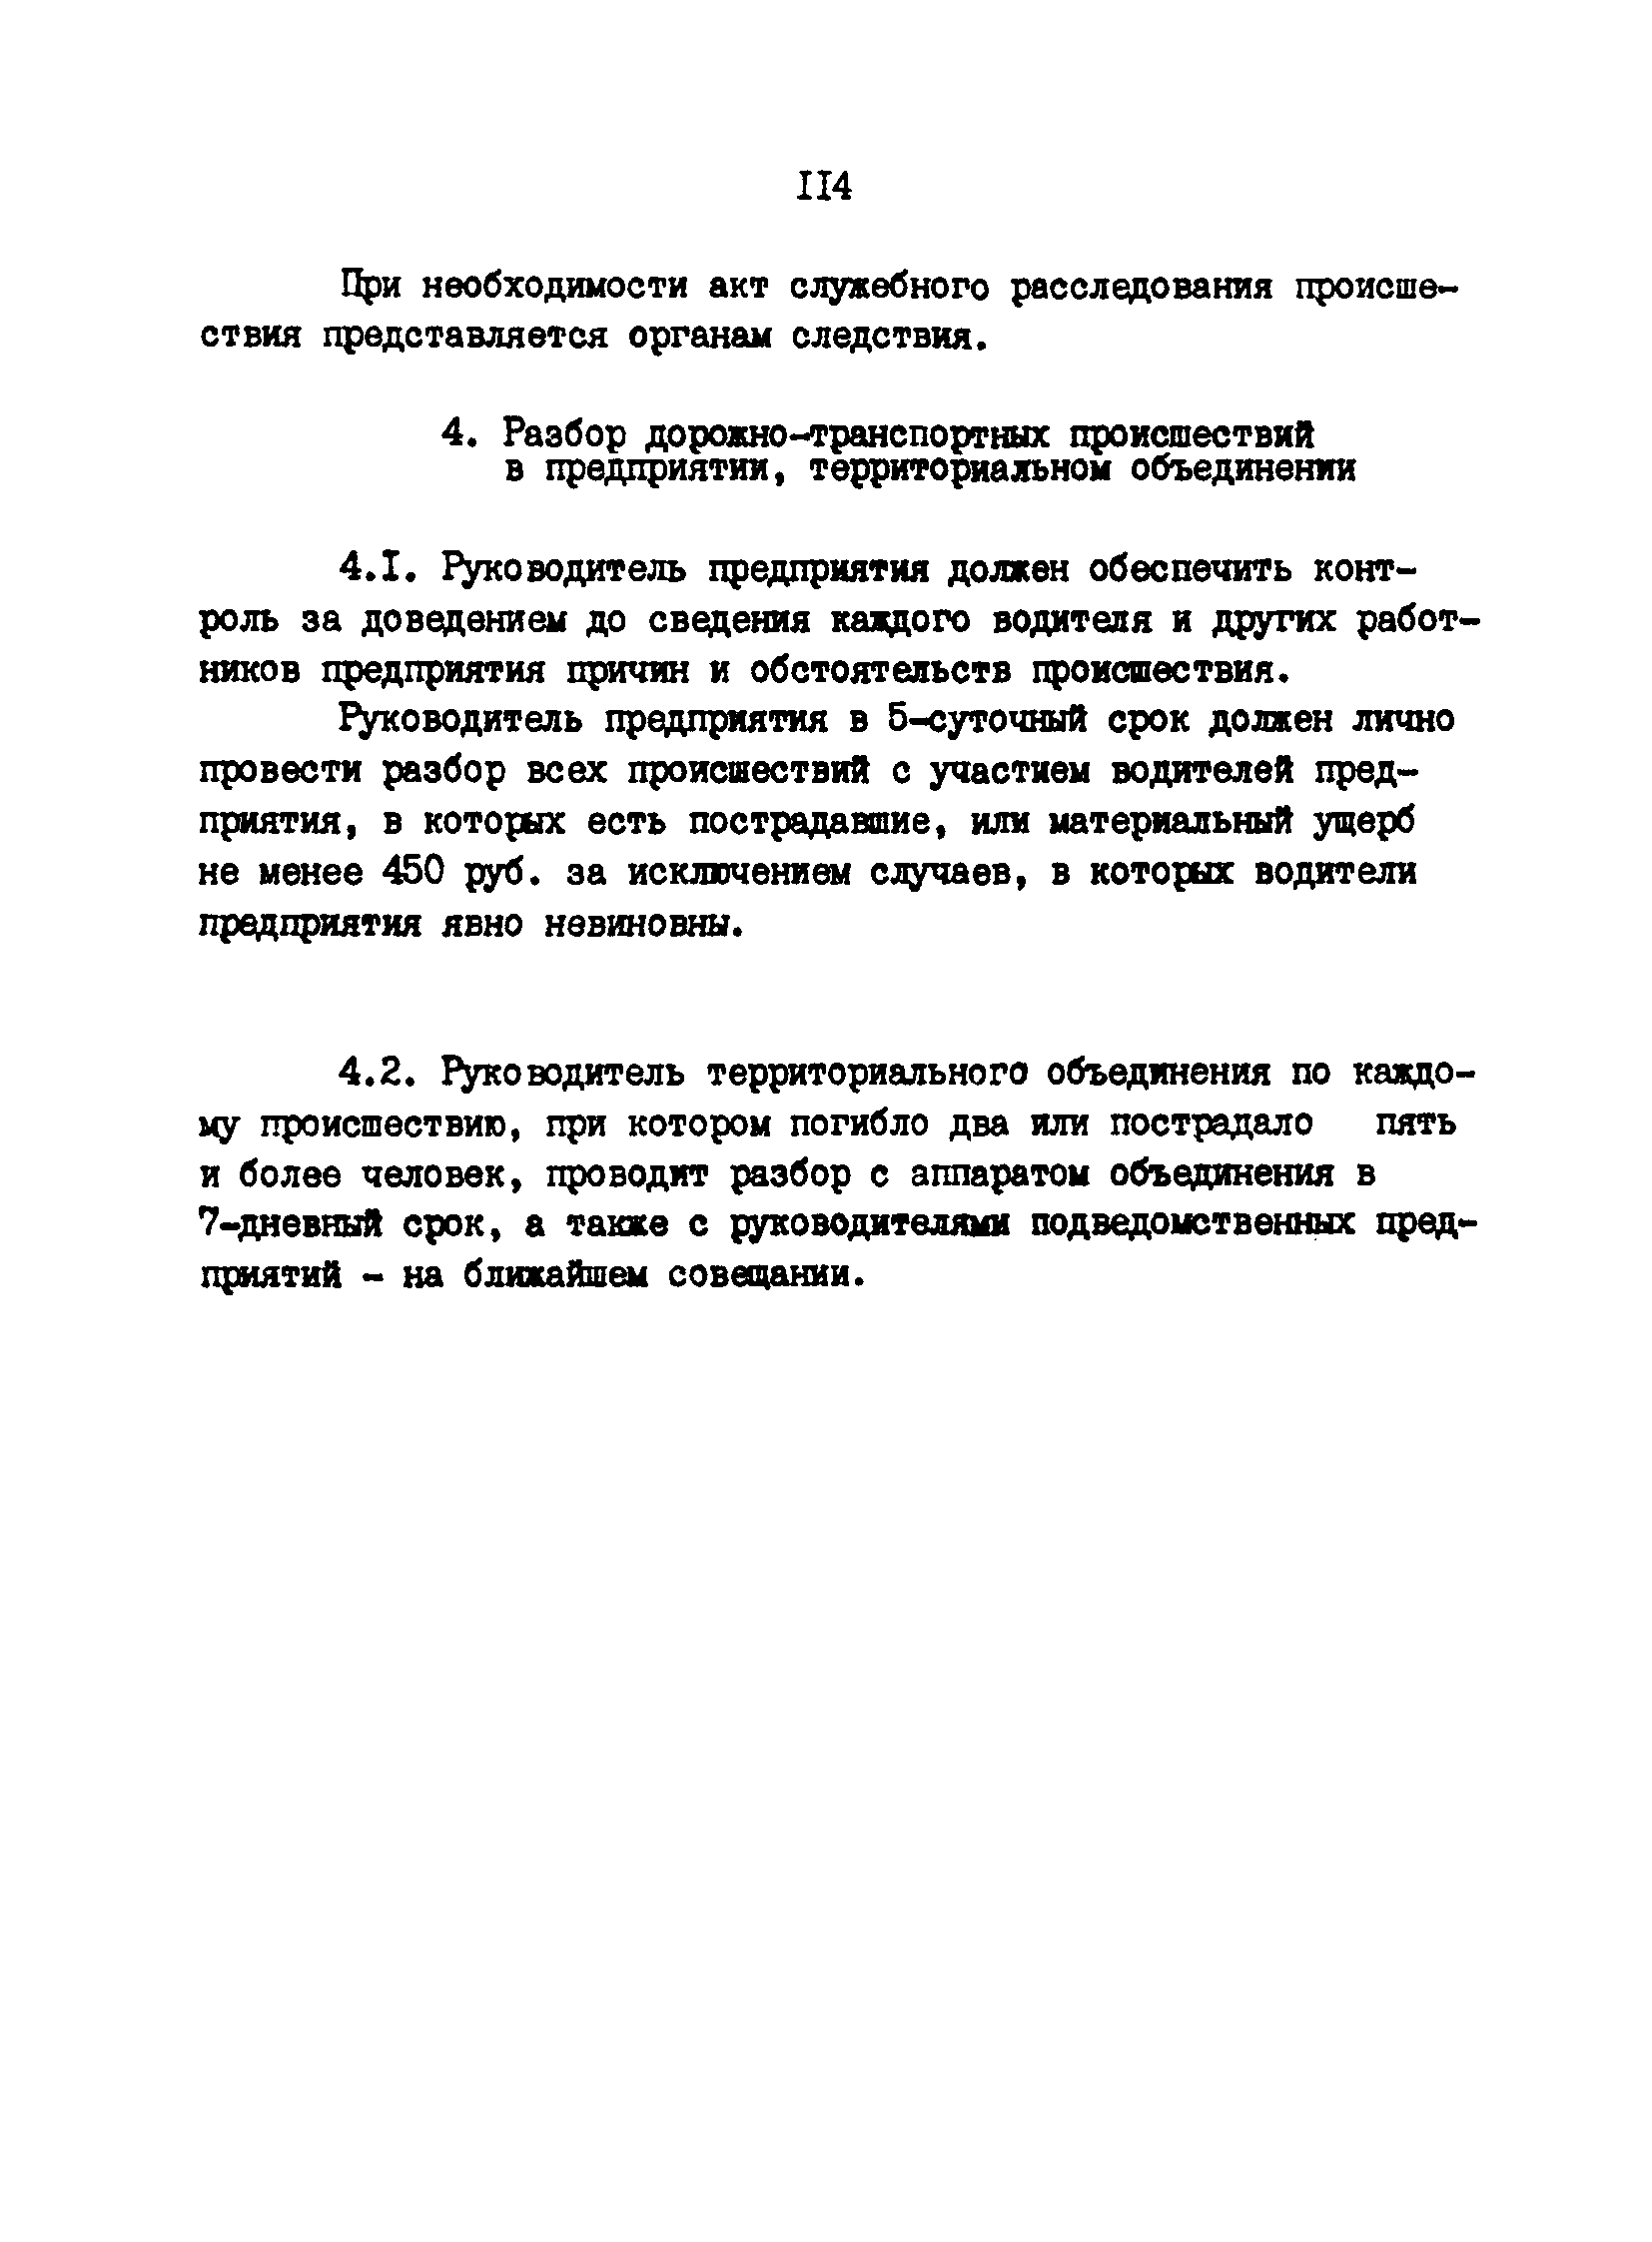 РД 200-РСФСР-12-0071-86-15